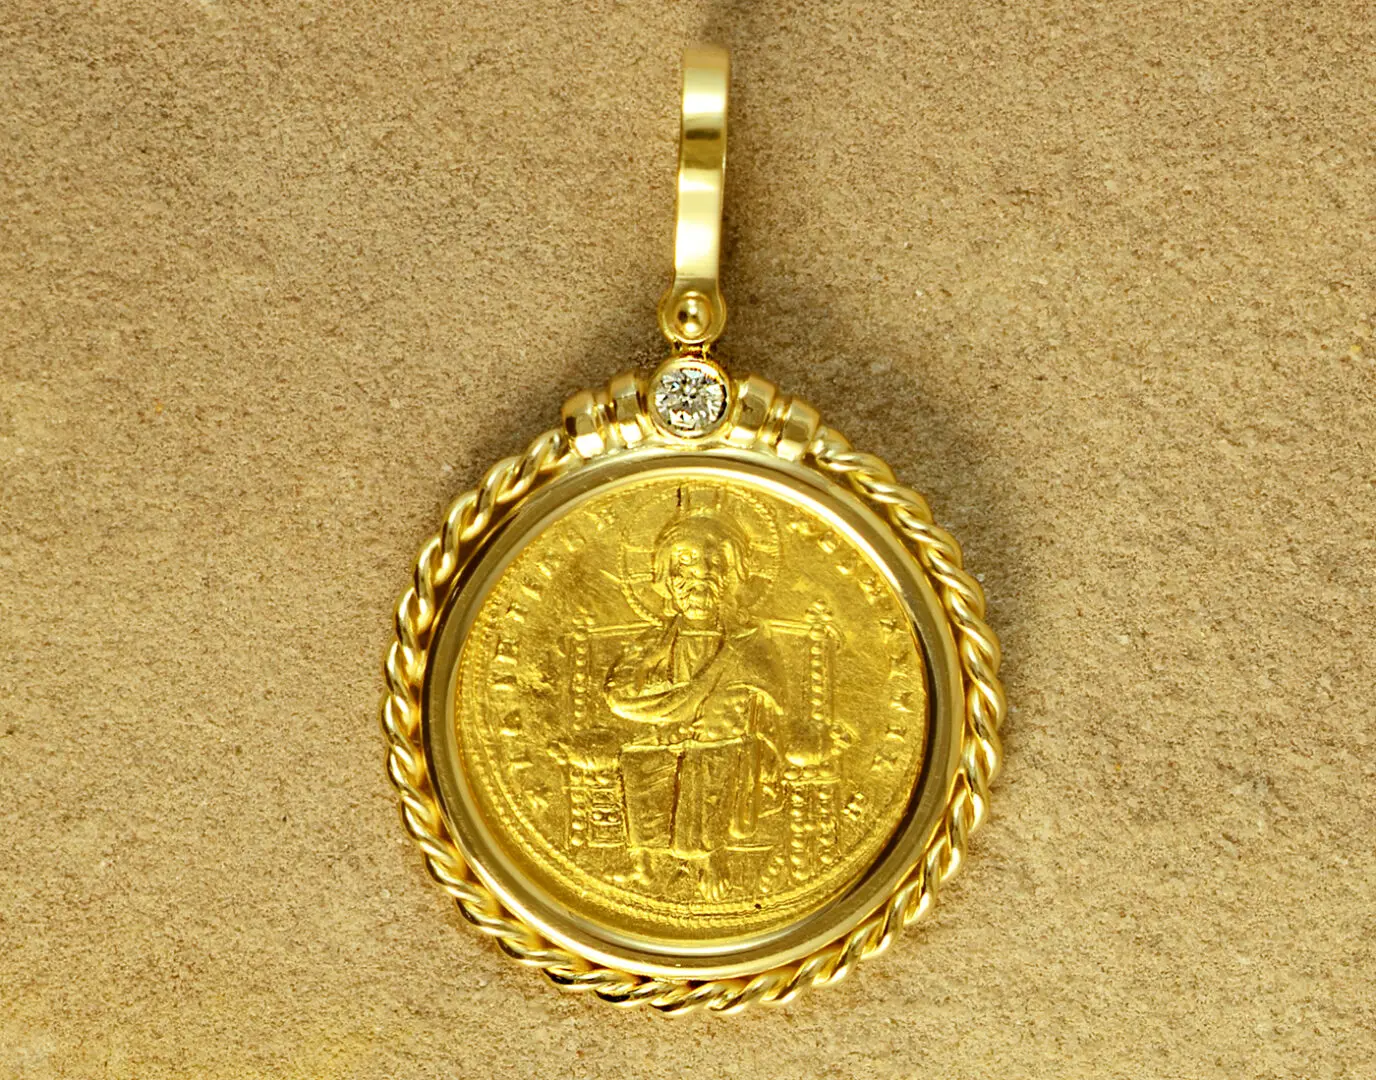 ANCIENT COINS CF196 18KT 013 DIA ROMANUS III